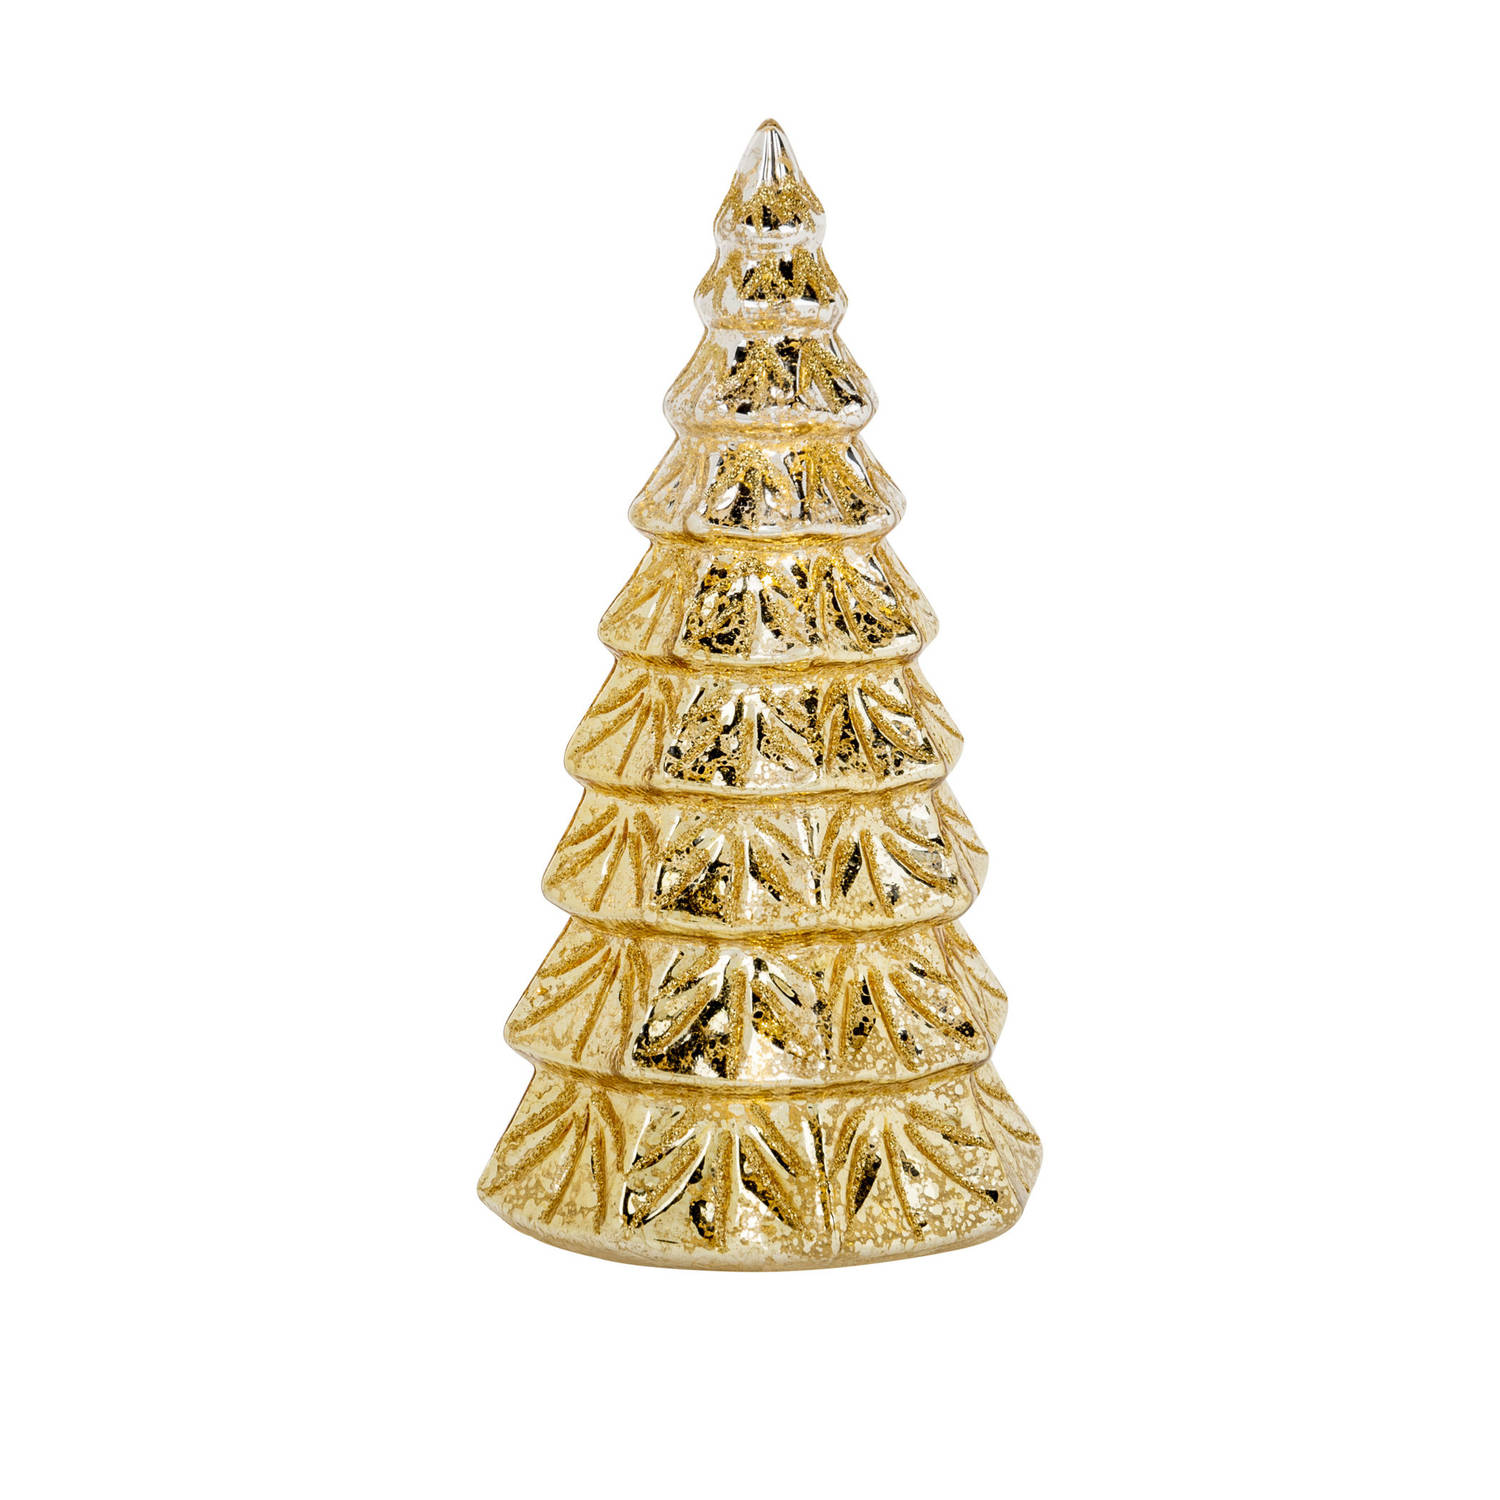 1x stuks led kaarsen kerstboom kaars goud D9 x H19 cm - LED kaarsen